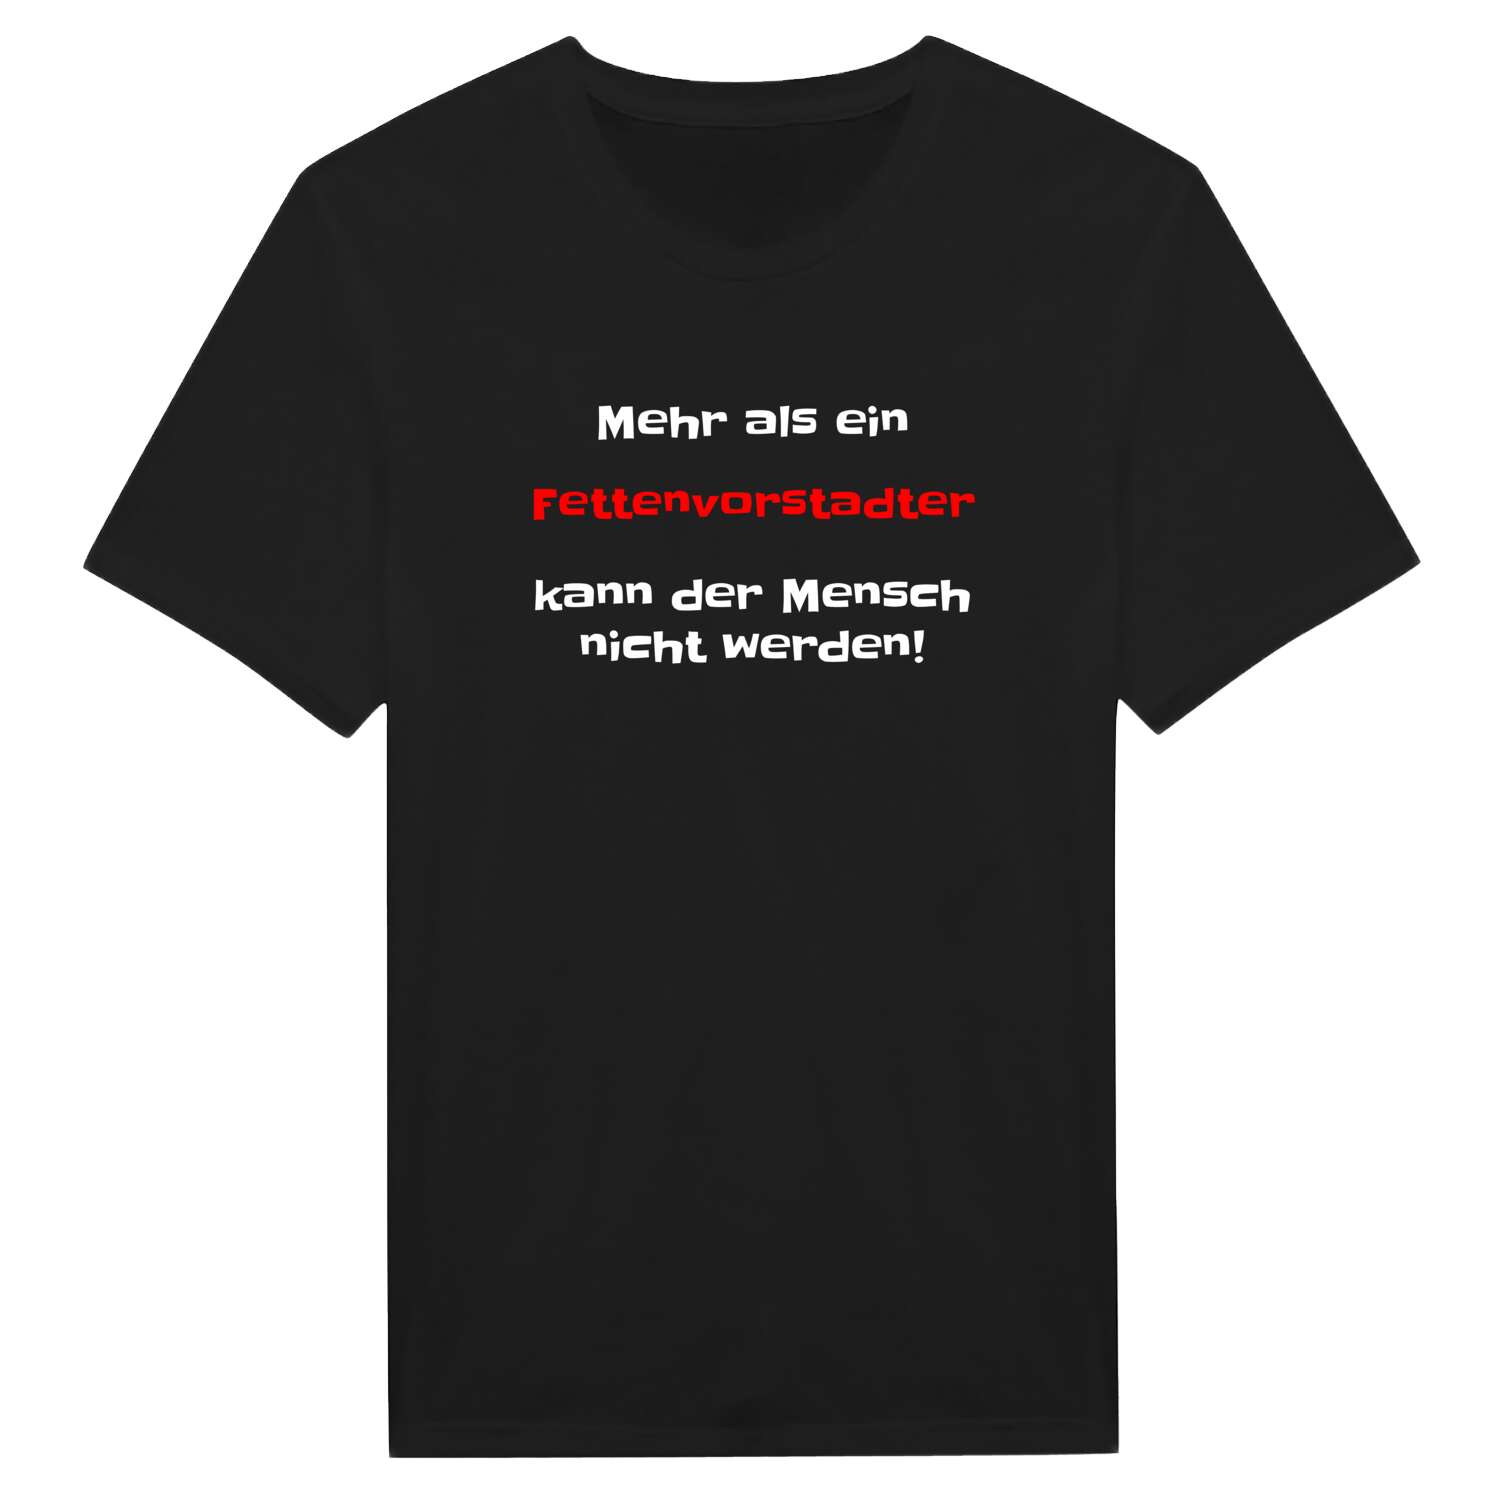 Fettenvorstadt T-Shirt »Mehr als ein«